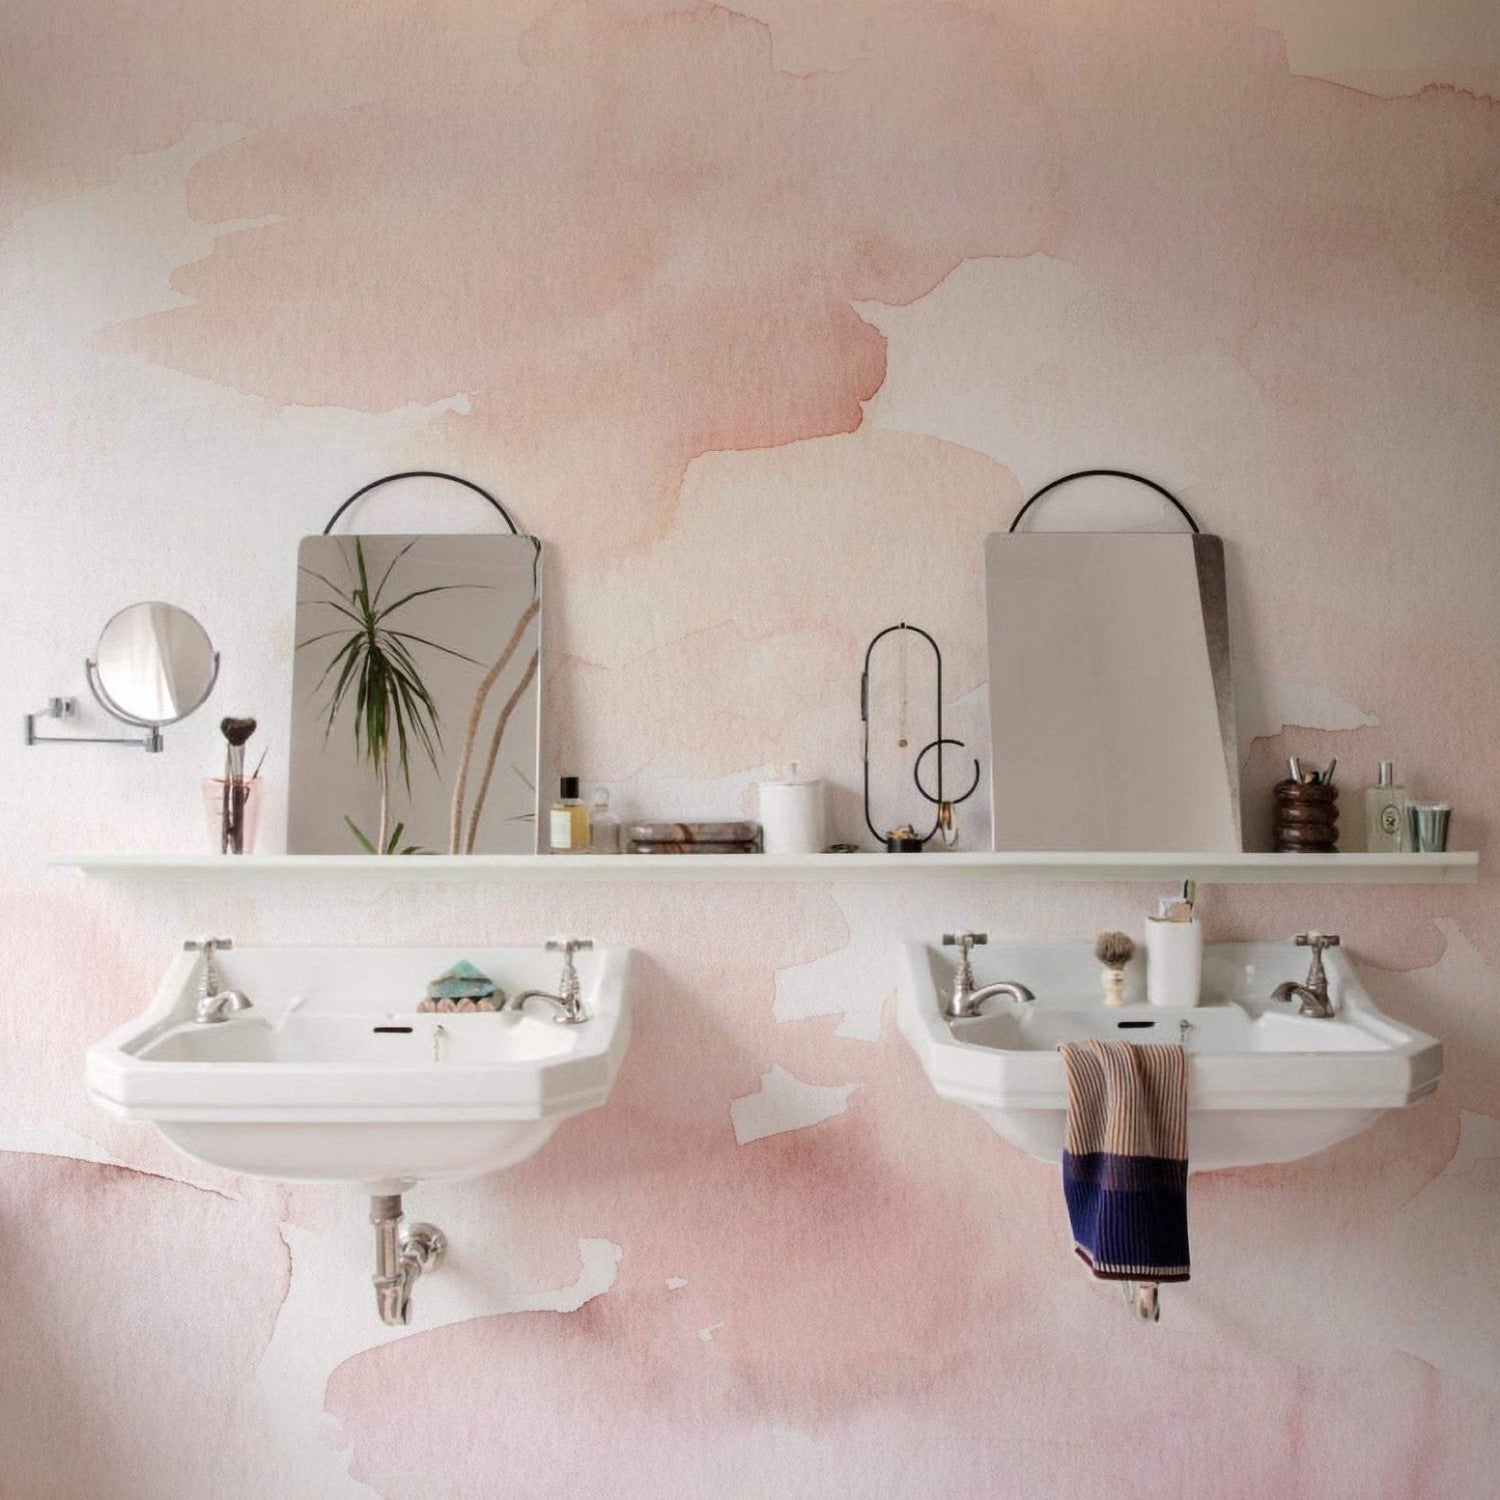 wallpaper, peel and stick wallpaper, Home decor, mural wallpaper, Hand painted mural wallpaper, pink wallpaper,  bathroom wallpaper, 